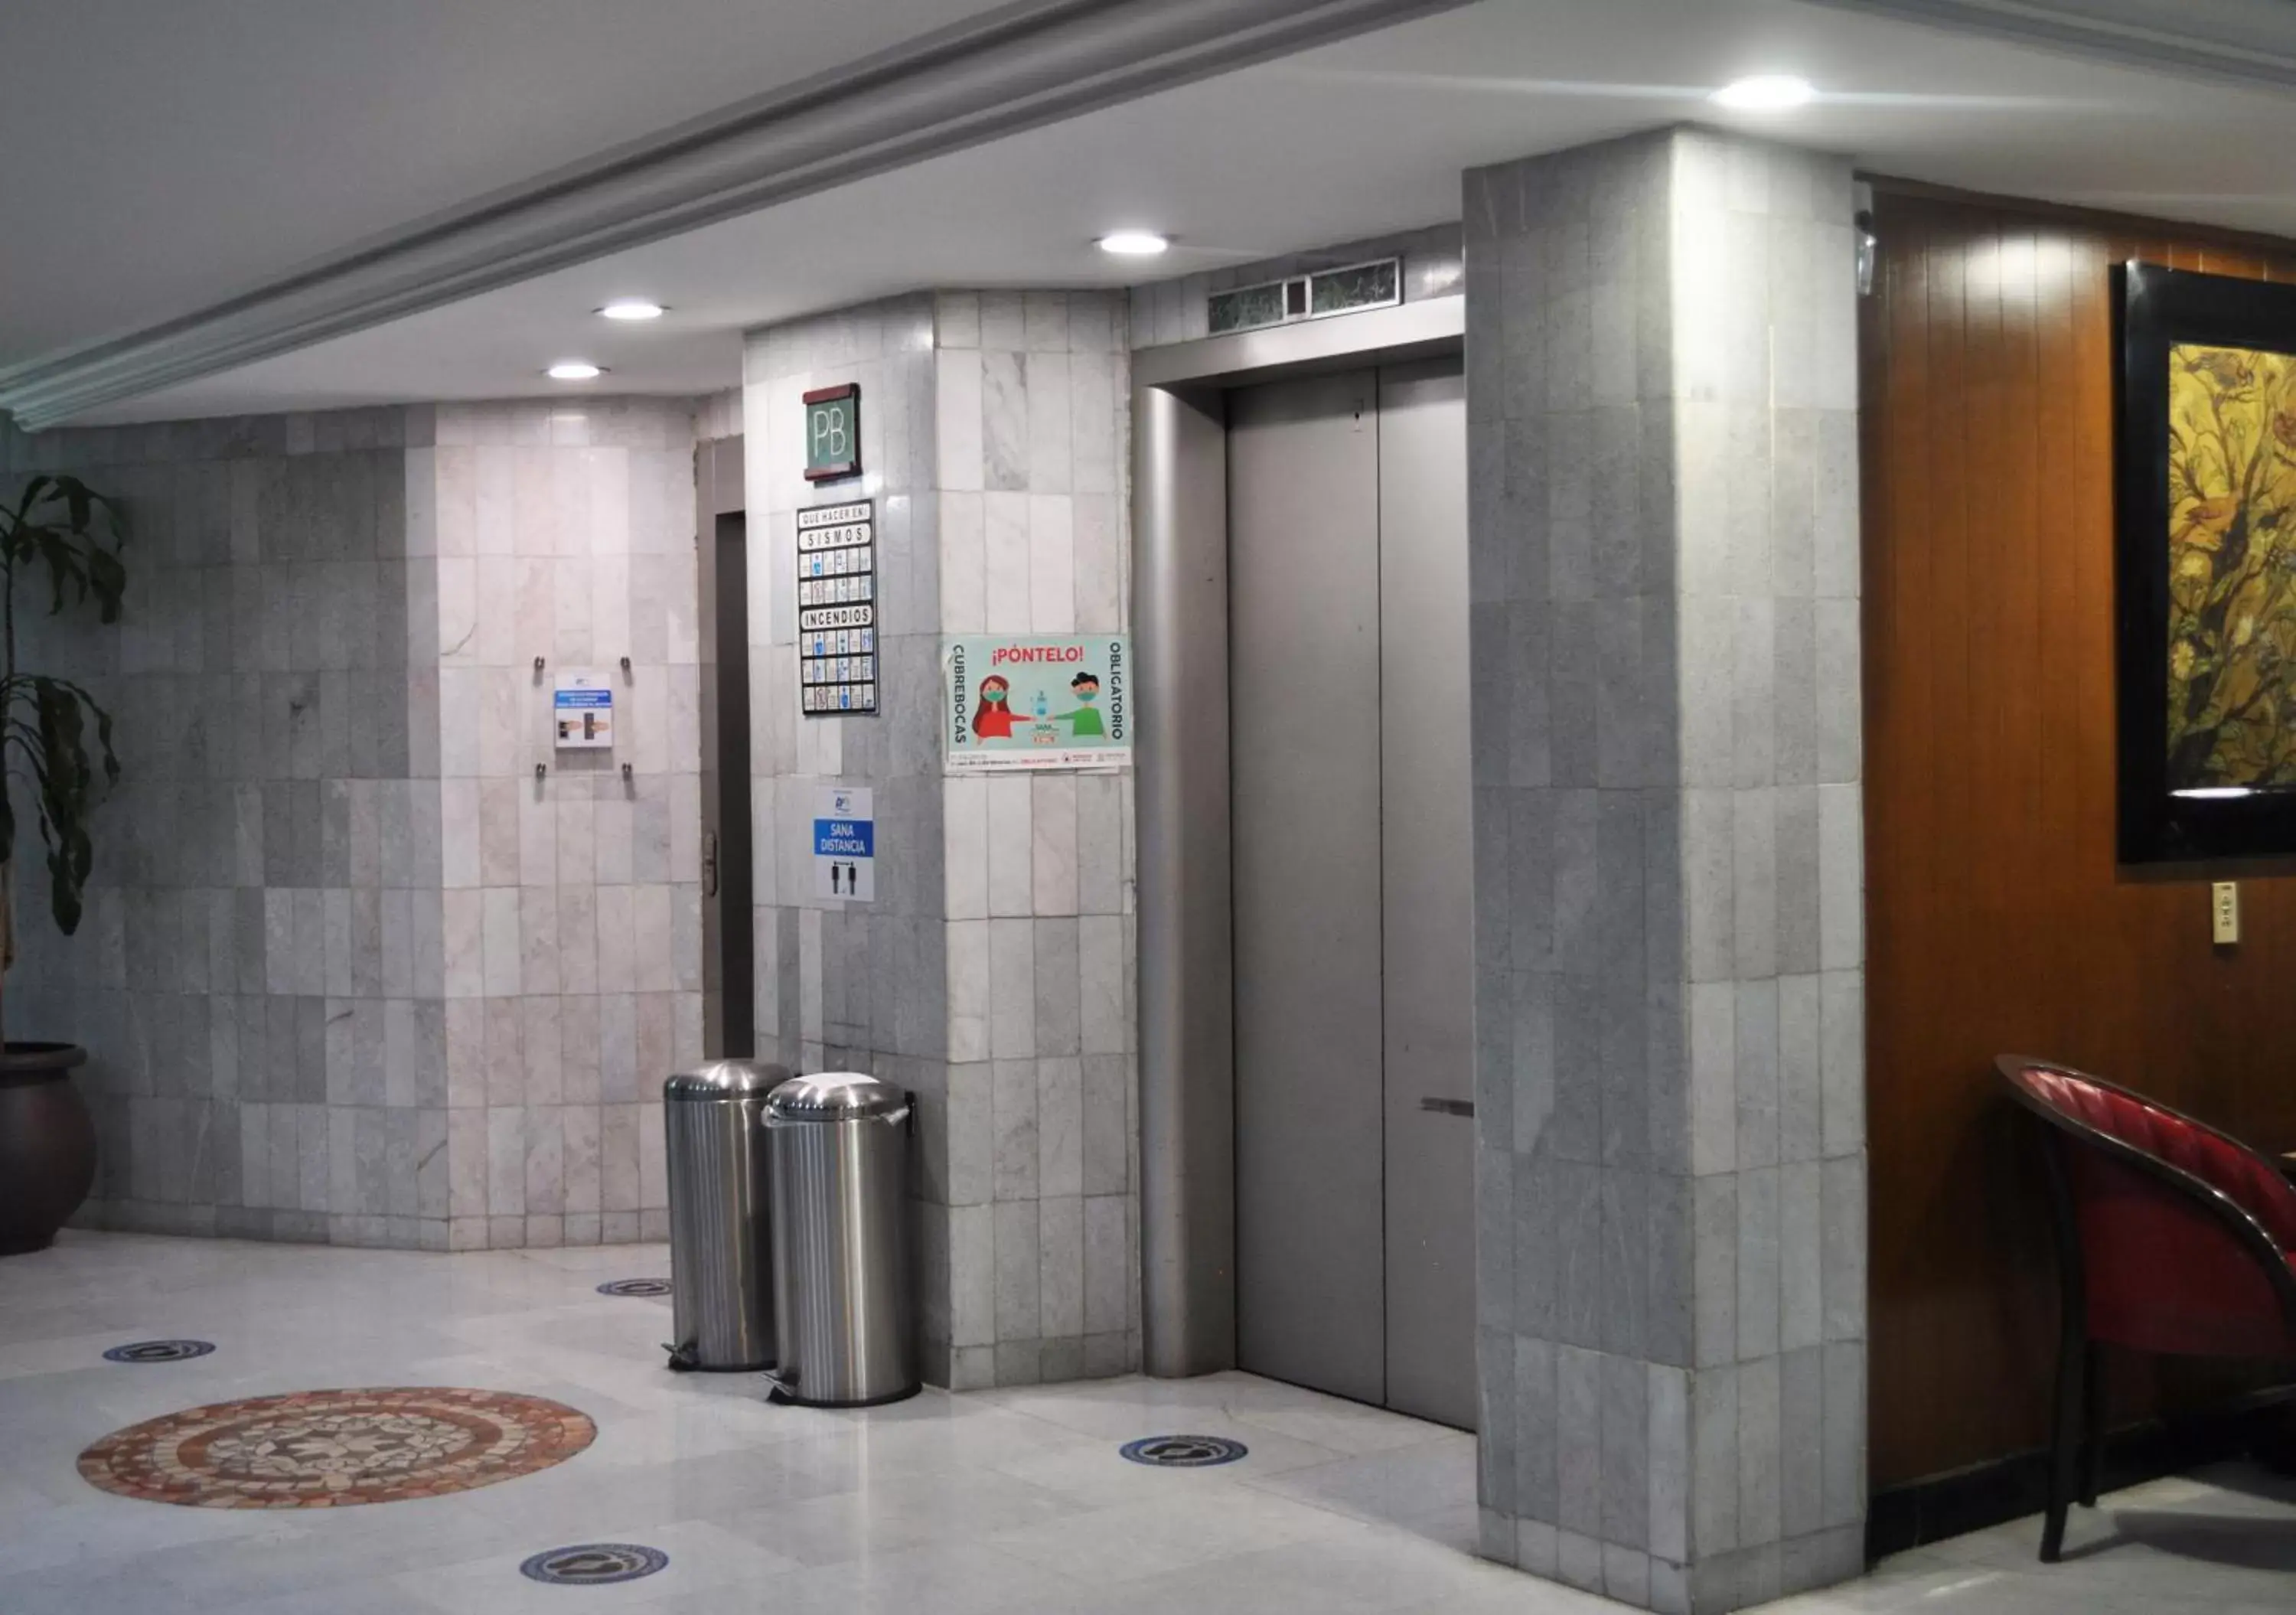 Lobby or reception, Bathroom in Hotel Arroyo de la Plata